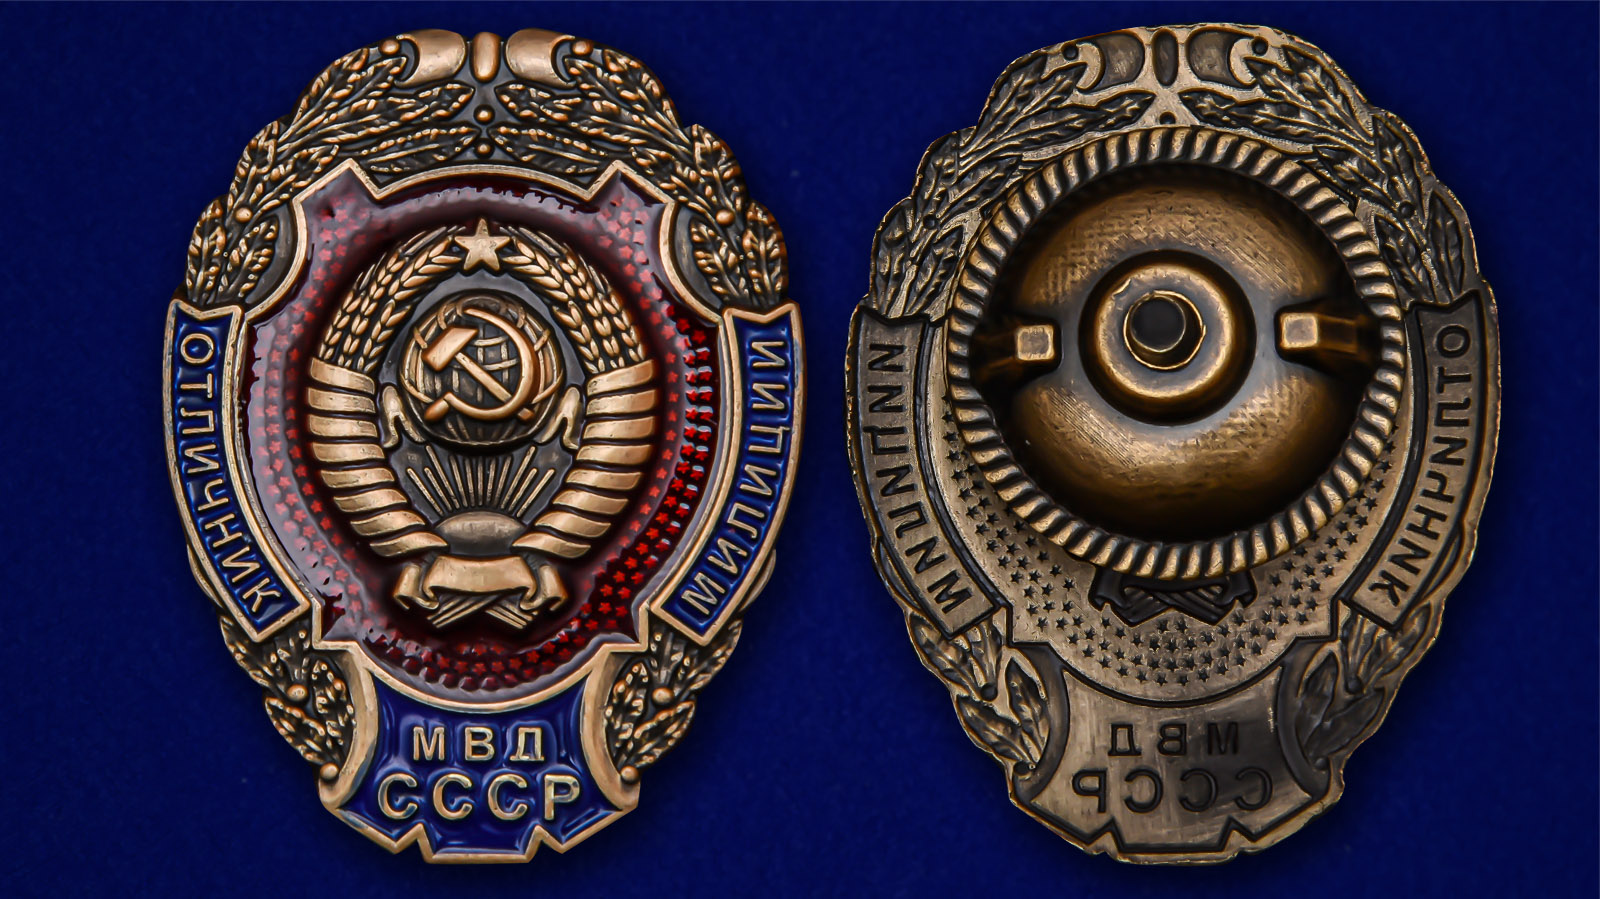 Наградной знак "Отличник милиции МВД СССР" 